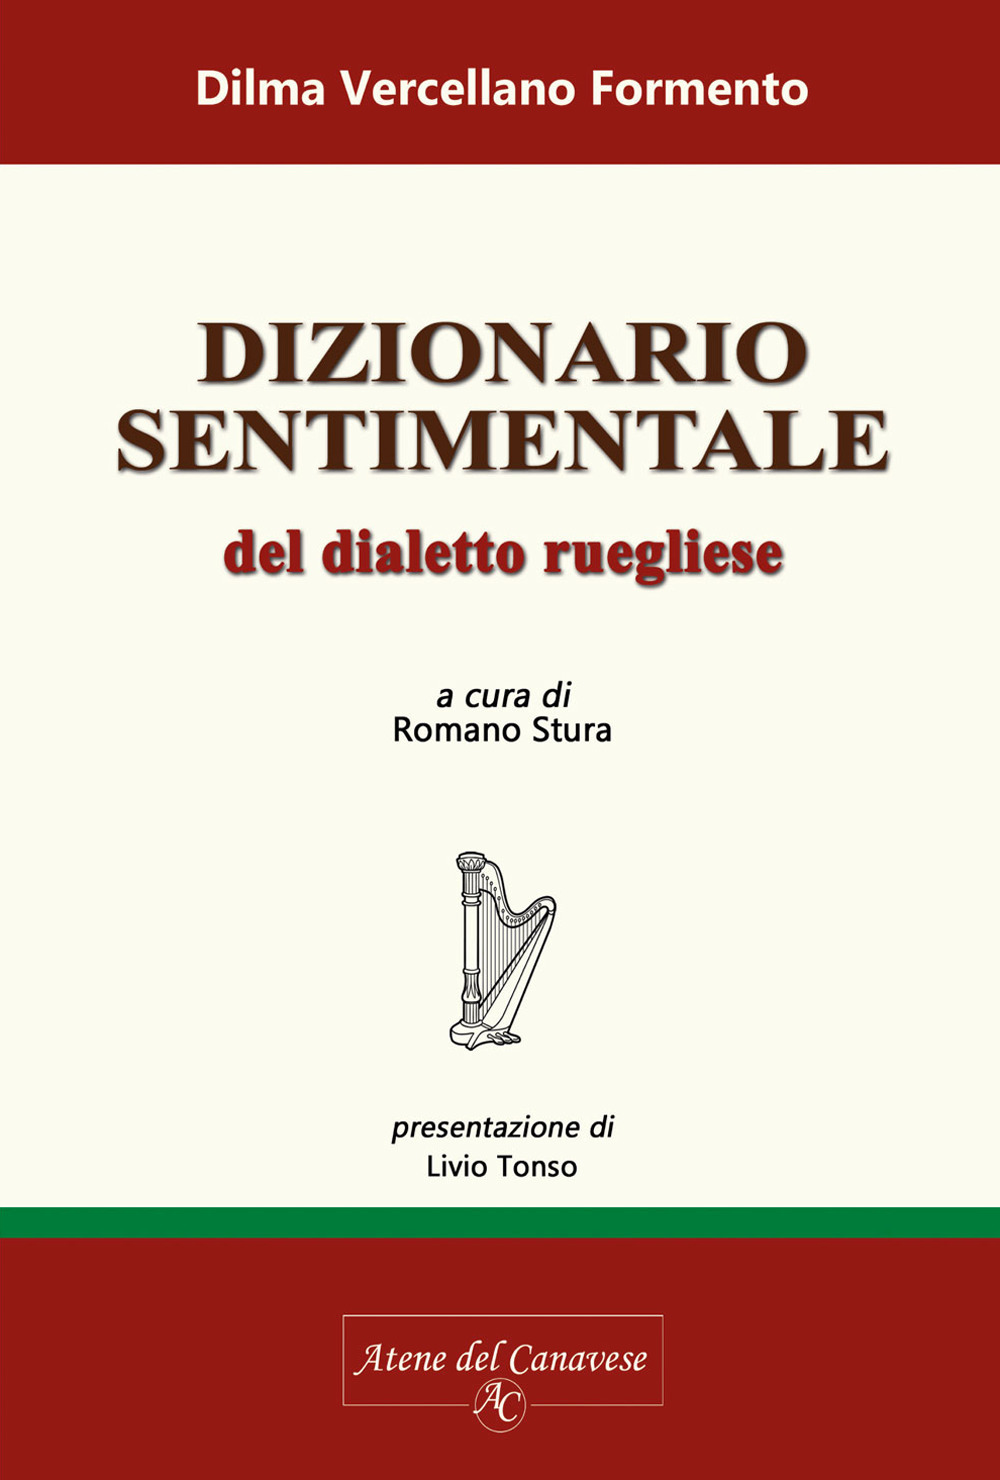 Libri Vercellano Formento Dilma - Dialetto Sentimentale Del Dialetto Ruegliese NUOVO SIGILLATO, EDIZIONE DEL 01/01/2018 SUBITO DISPONIBILE